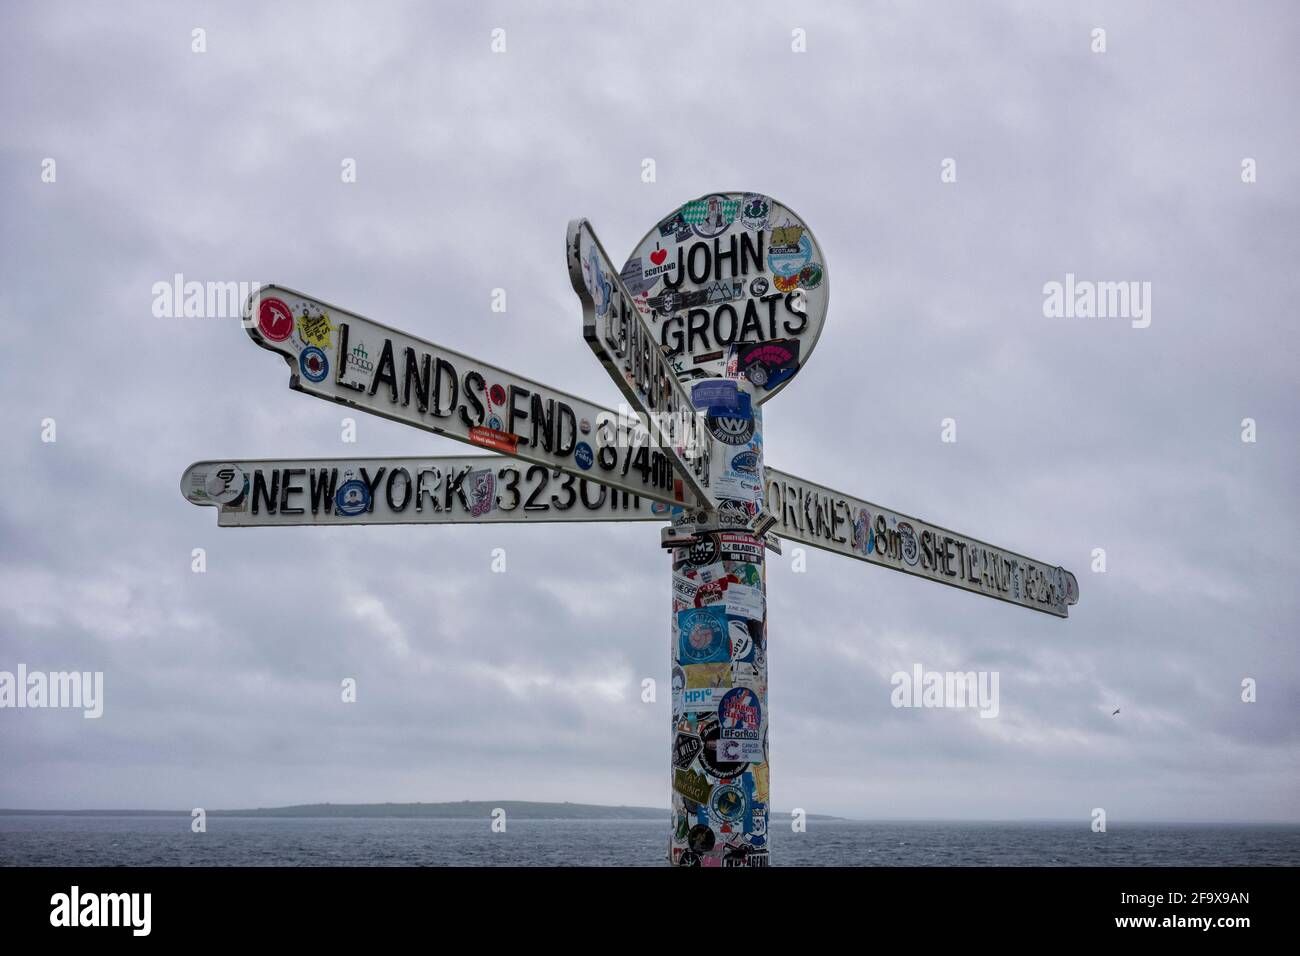 John O'Groats, Royaume-Uni - 24 juin 2019 : le panneau « Journey's End » à John o' Groats, une attraction touristique populaire marquant le plus au nord Banque D'Images